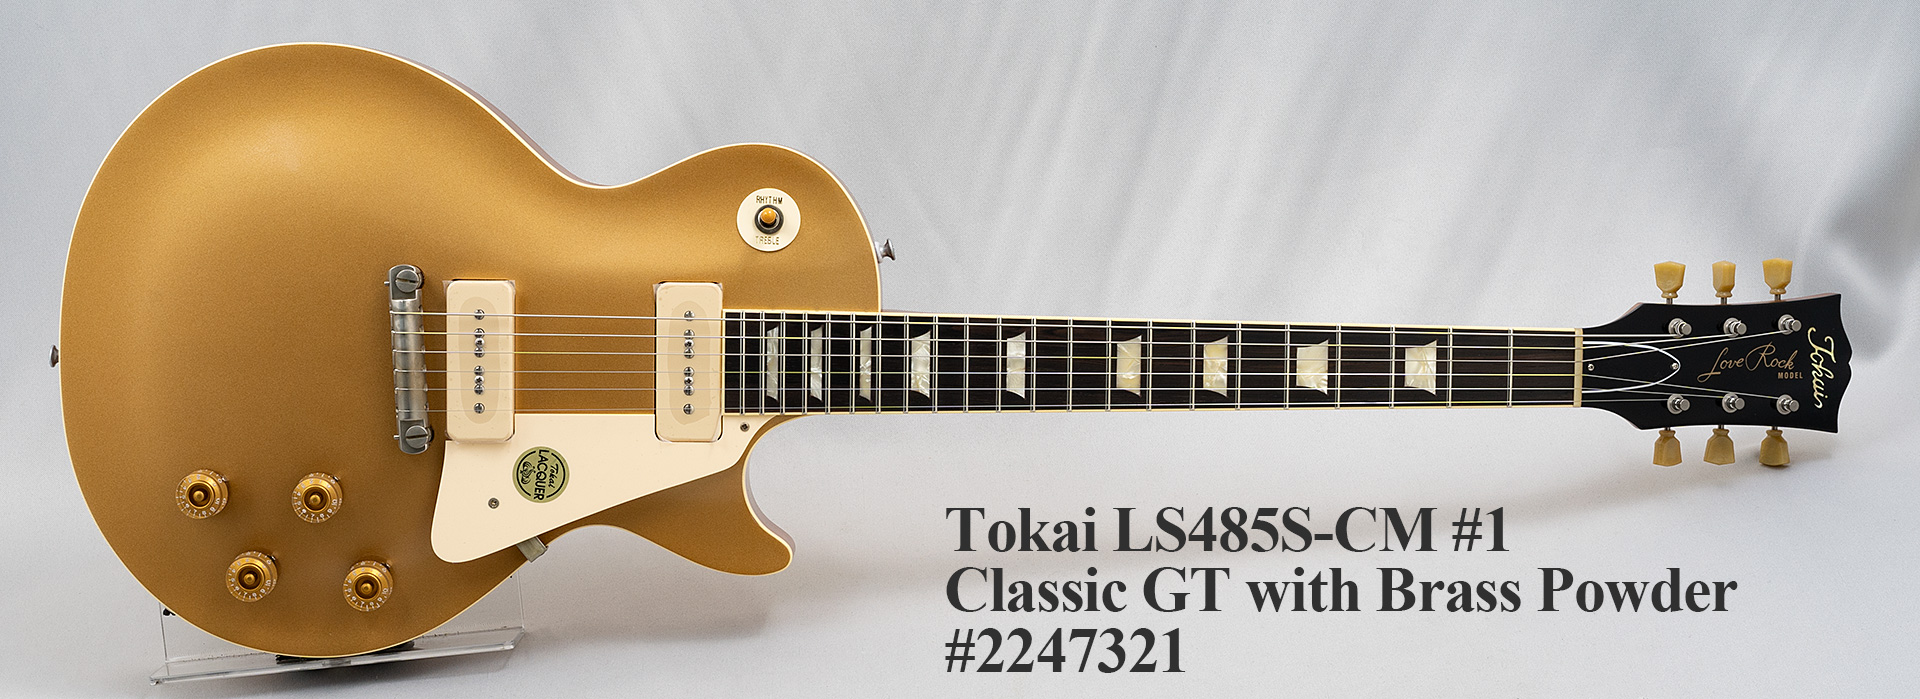 Tokai Love Rock レスポール バーブリッジ - エレキギター